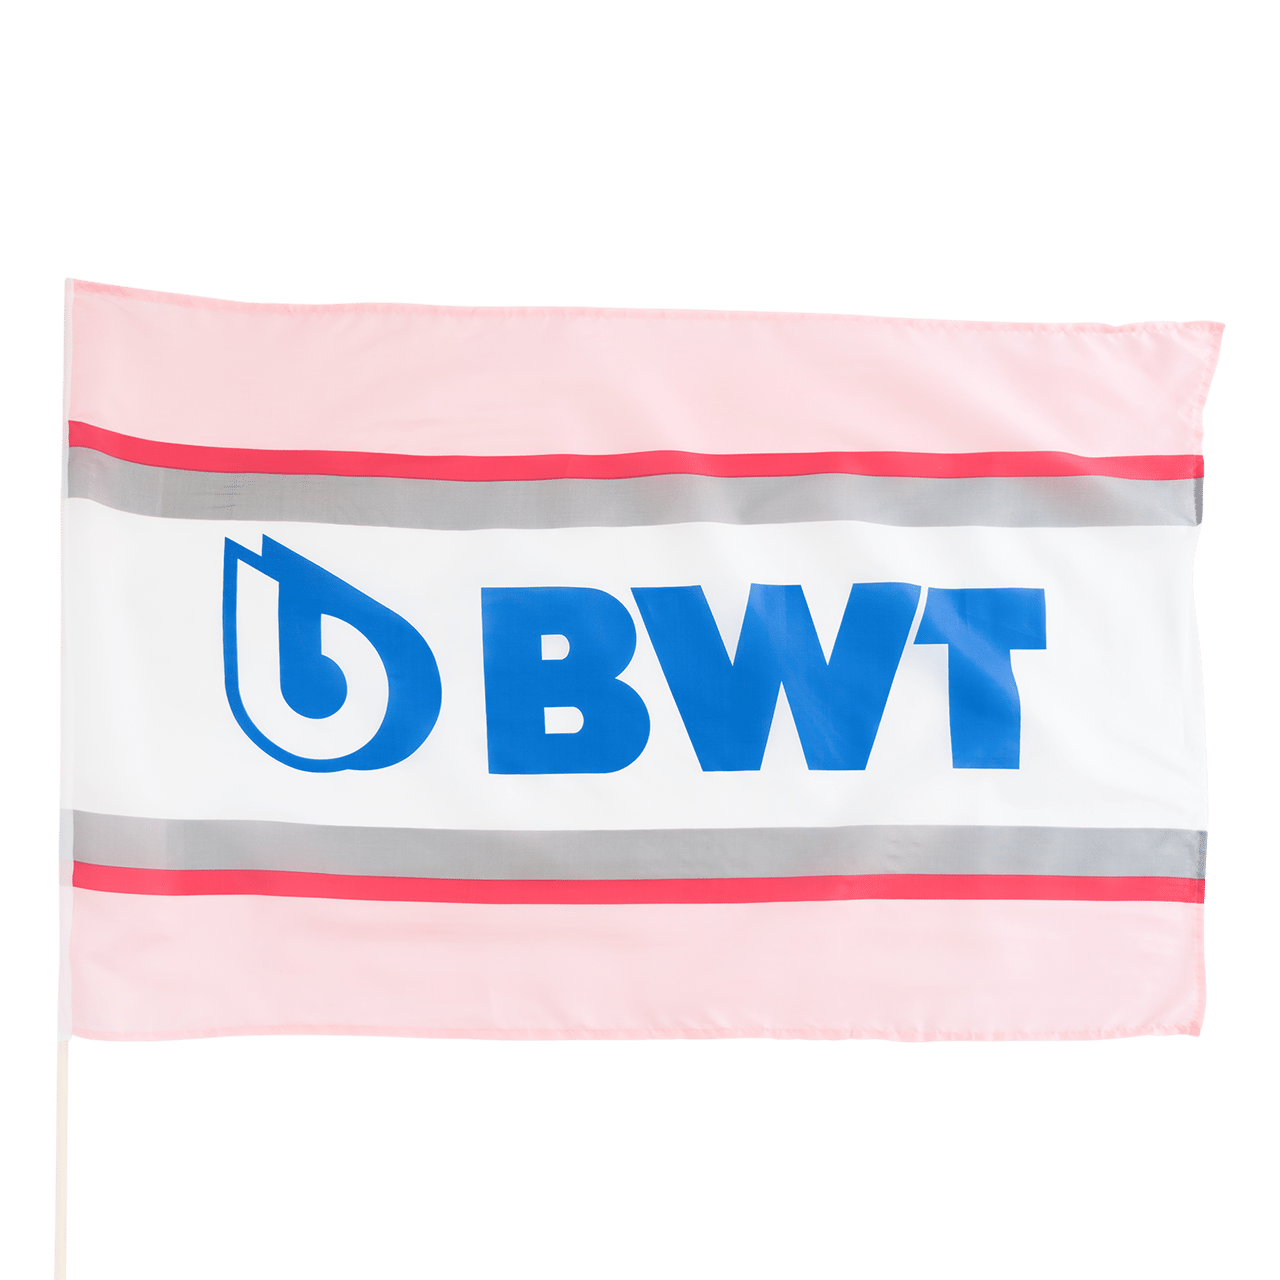 BWT Fahne in rosa Design und blauer Aufschrift